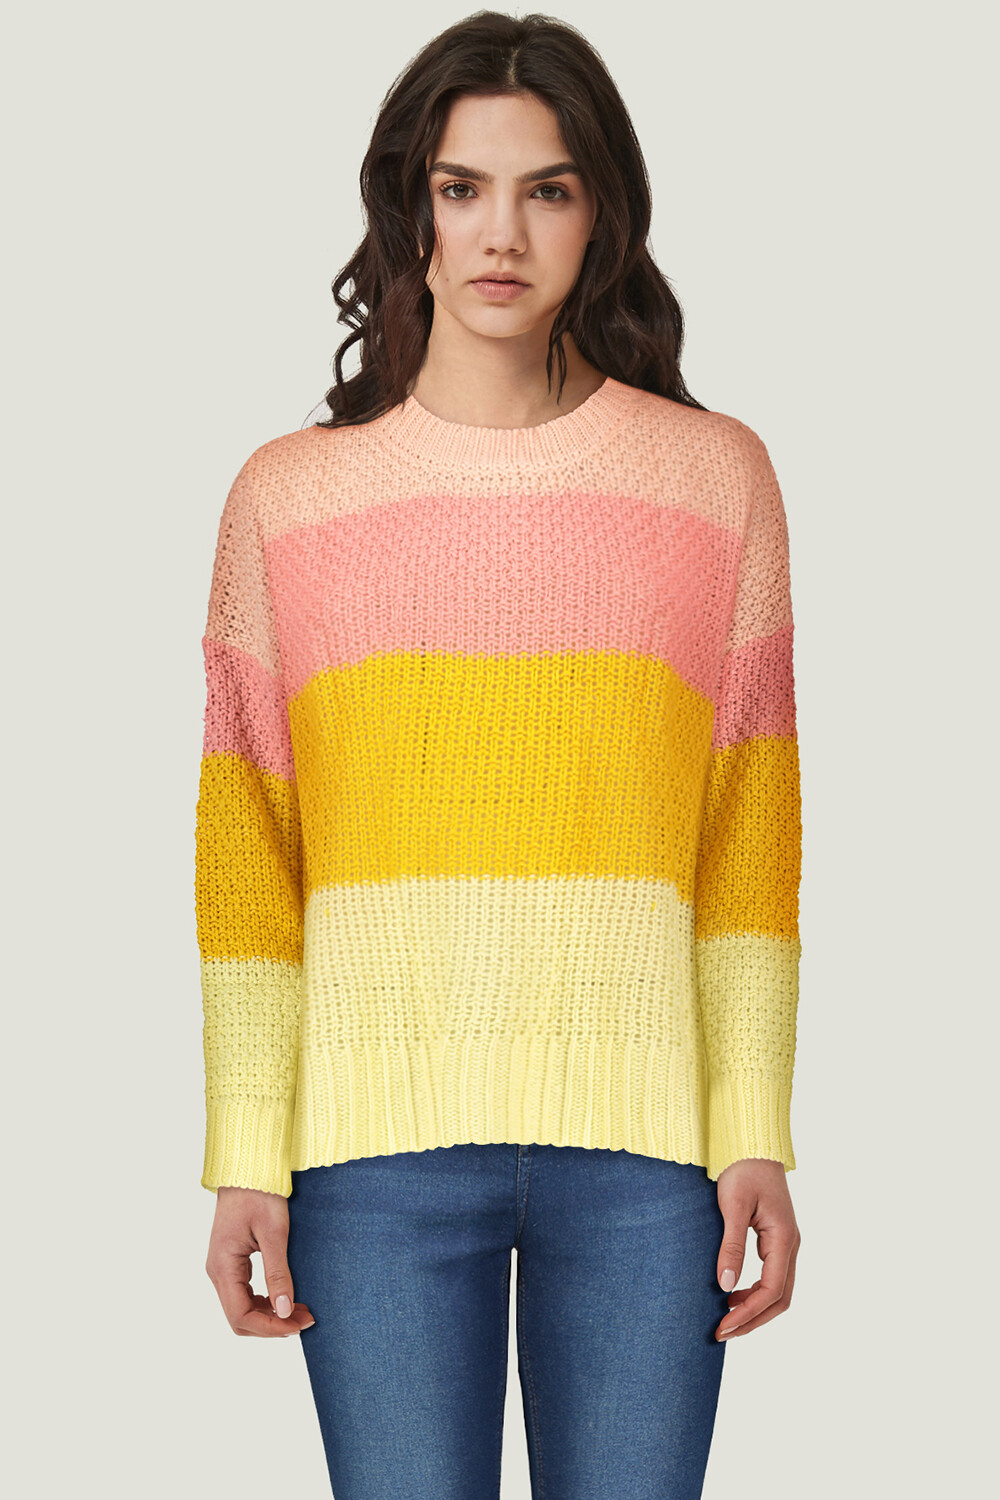 Sweater Ender 0203 Estampado 2